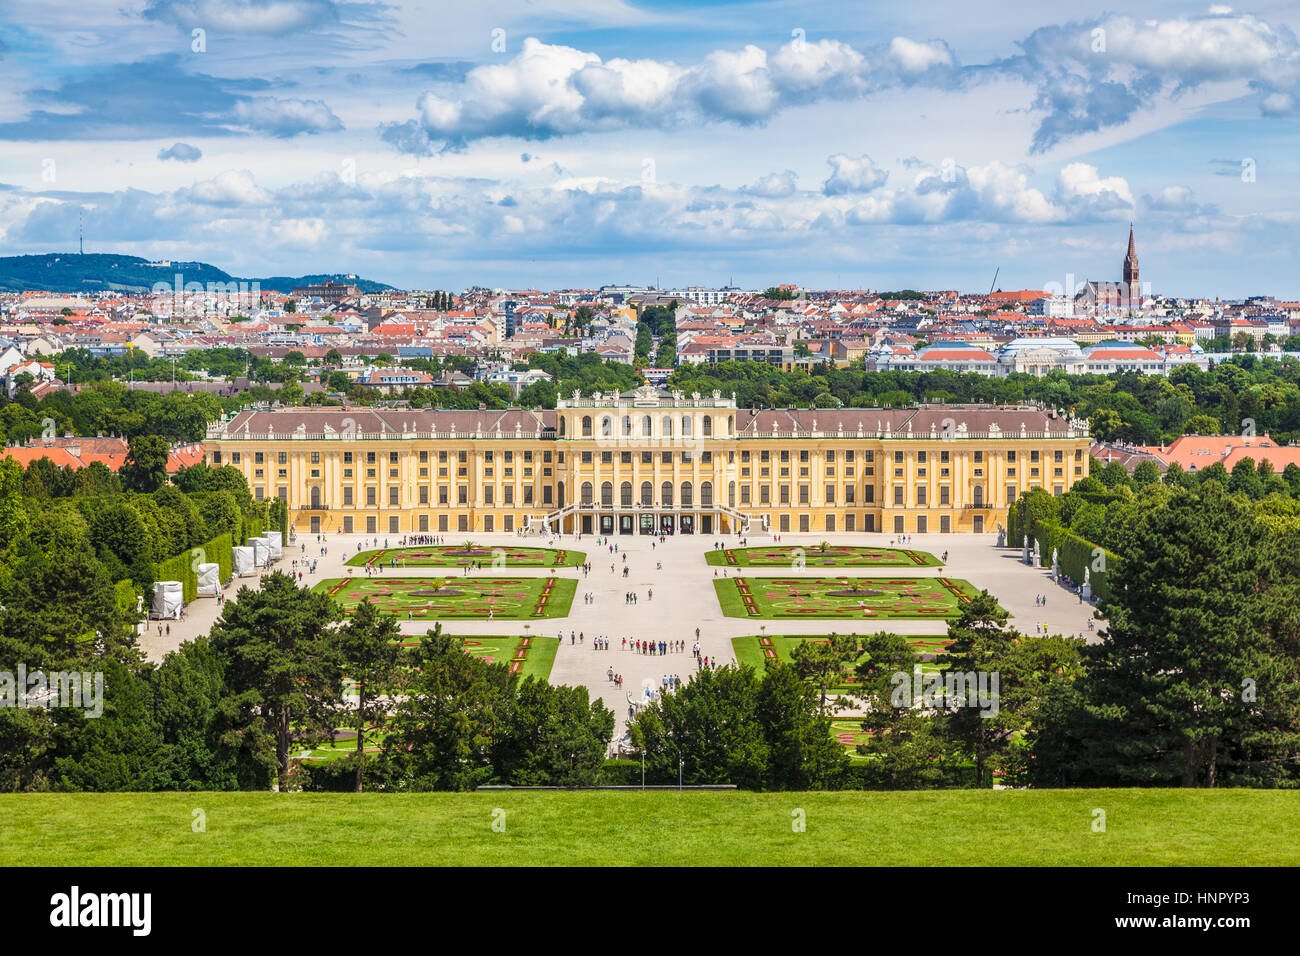 Klassische Ansicht des berühmten Schloss Schönbrunn mit malerischen großen Parterres Garten an einem schönen sonnigen Tag mit blauem Himmel und Wolken, Wien, Österreich Stockfoto